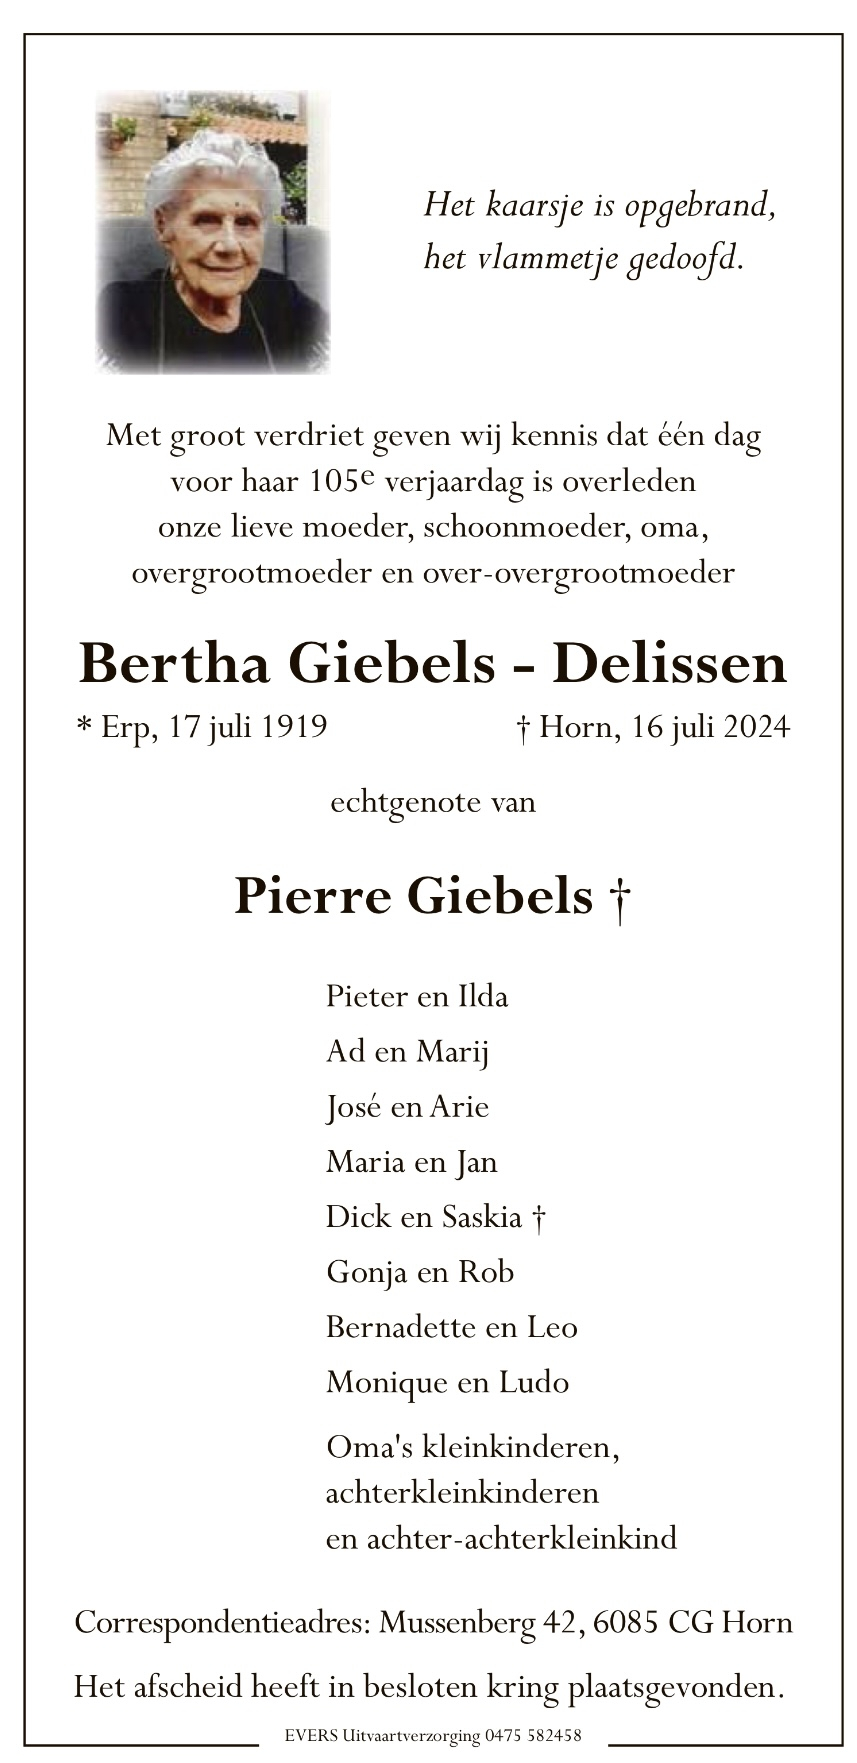 Bertha Giebels-Delissen.jpg